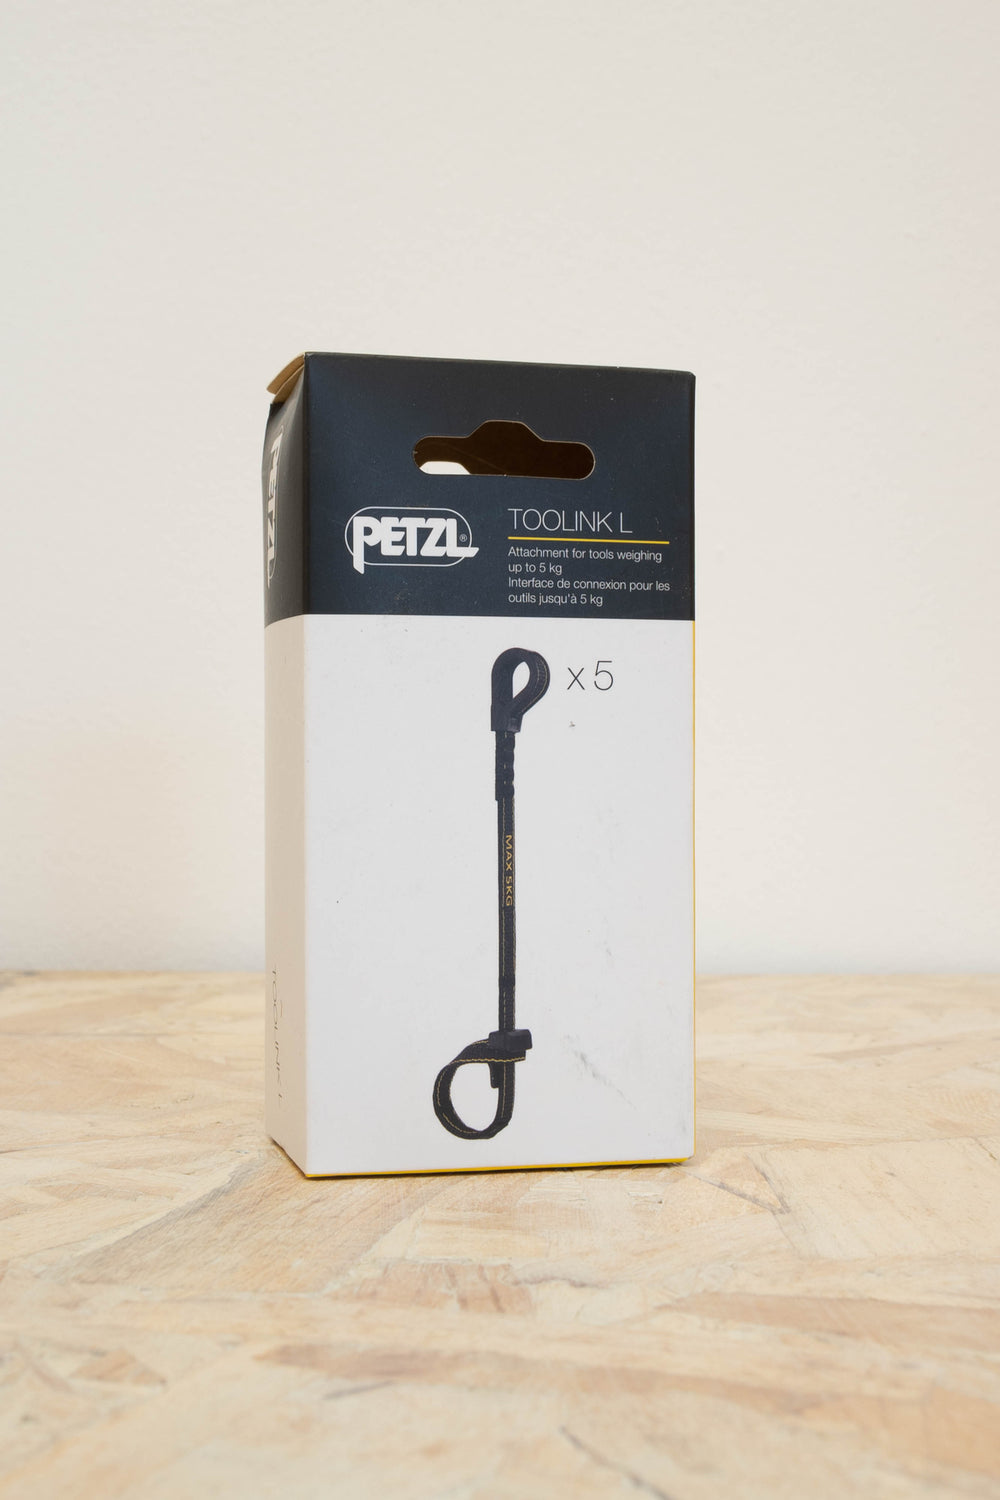 Petzl - Toolink L - 5 Pack